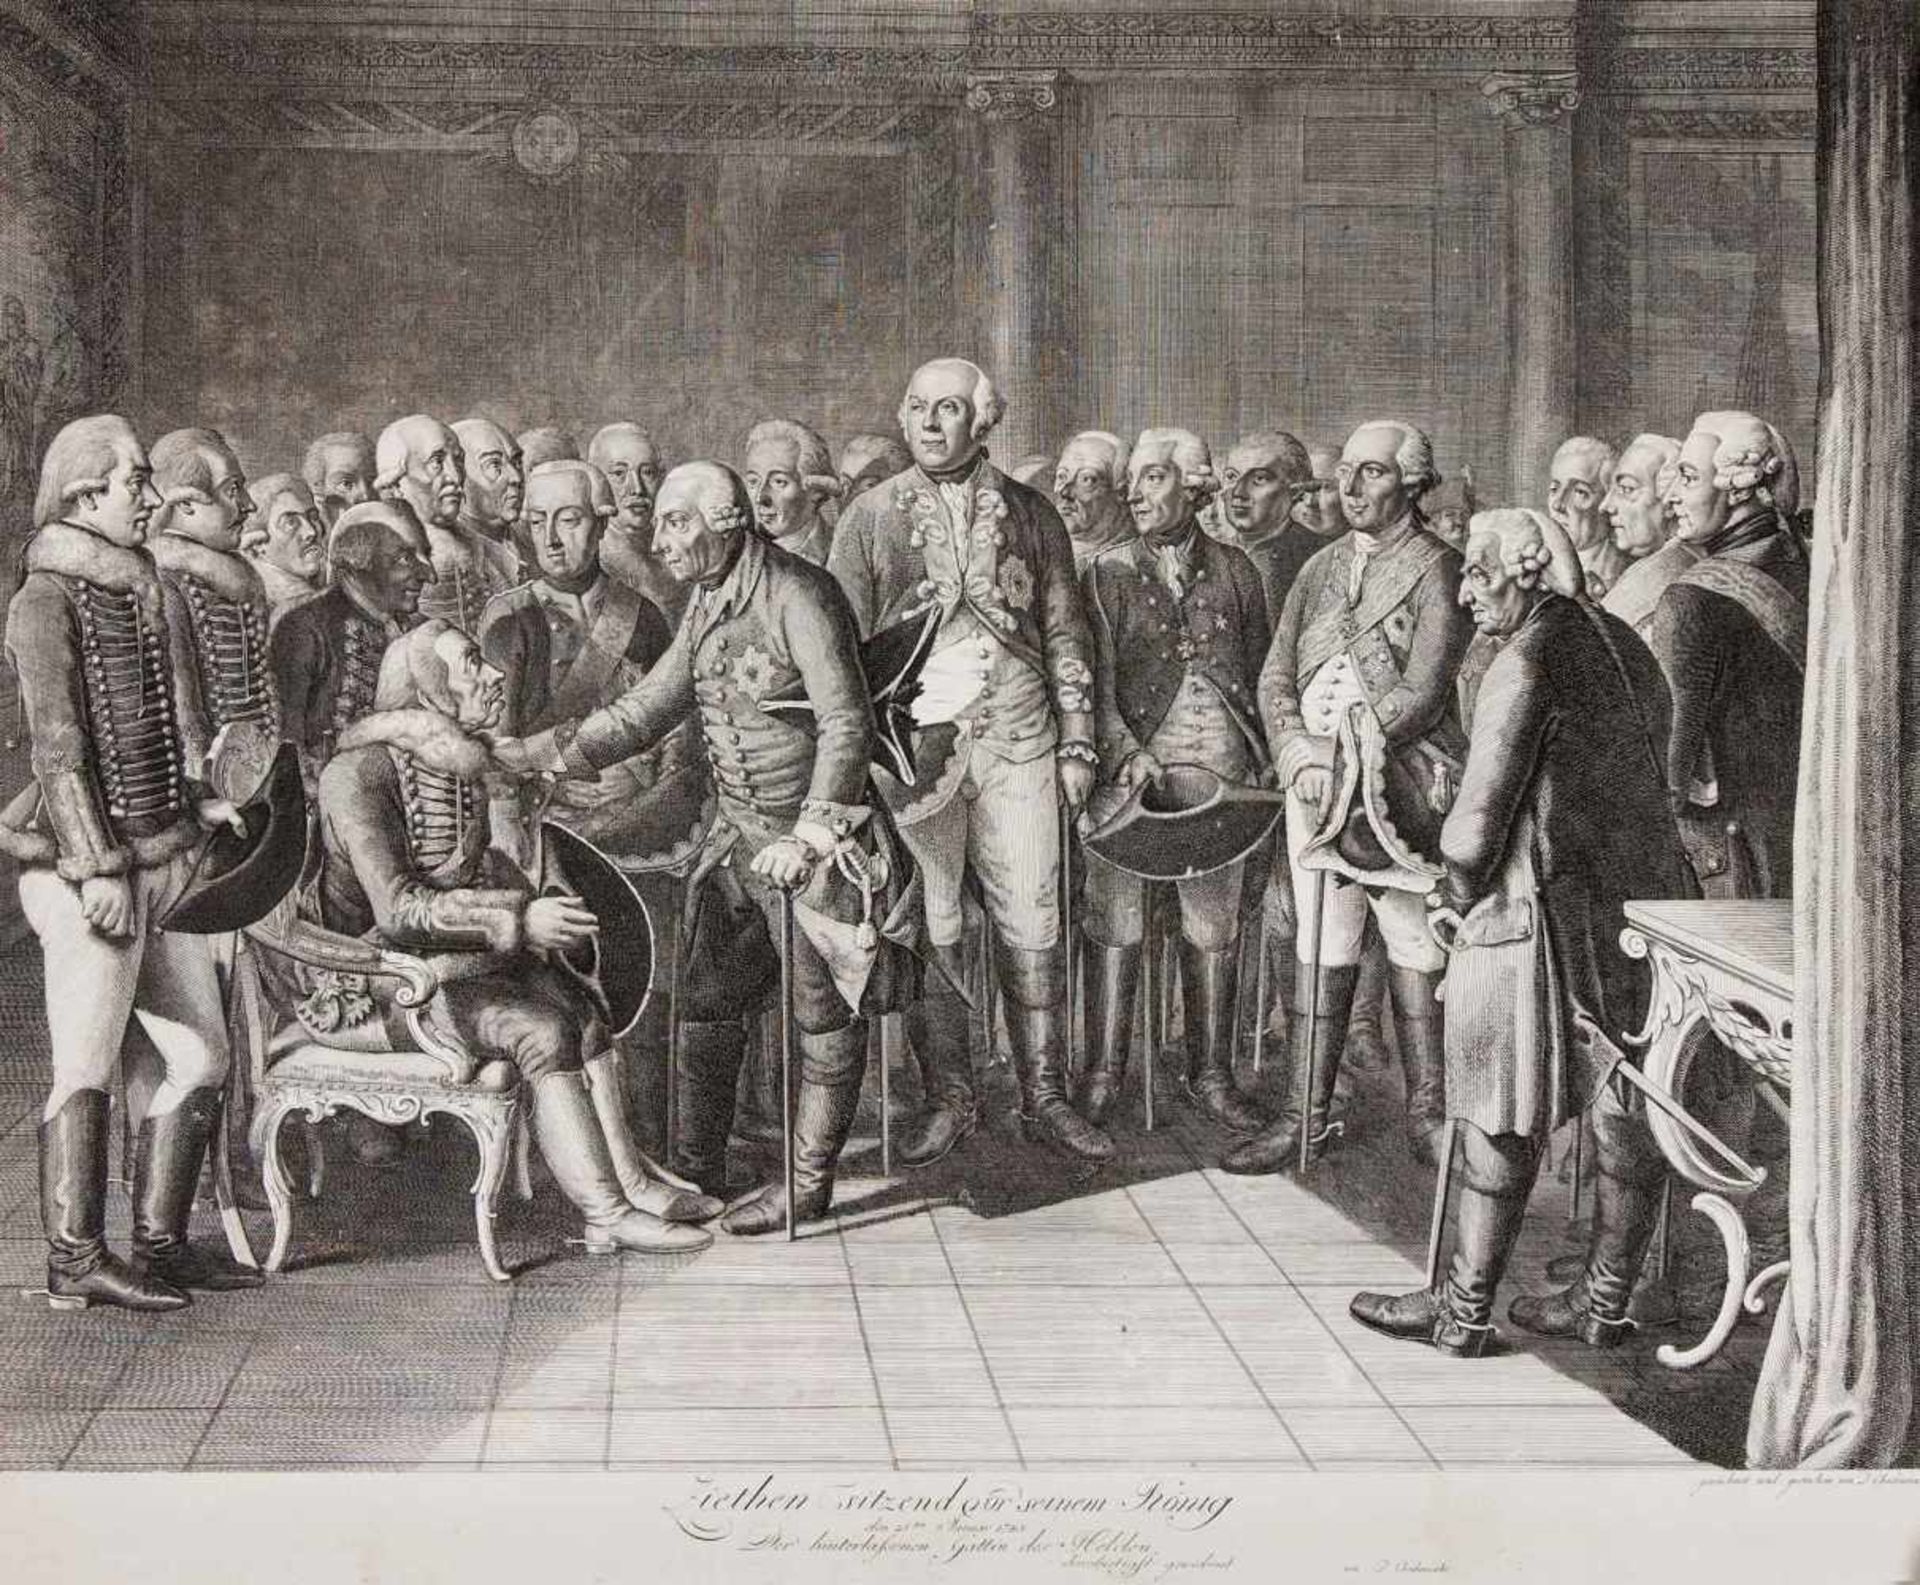 Daniel Nikolaus Chodowiecki (1726-1801), "Ziehten sitzend vor seinem König", Kupferstich